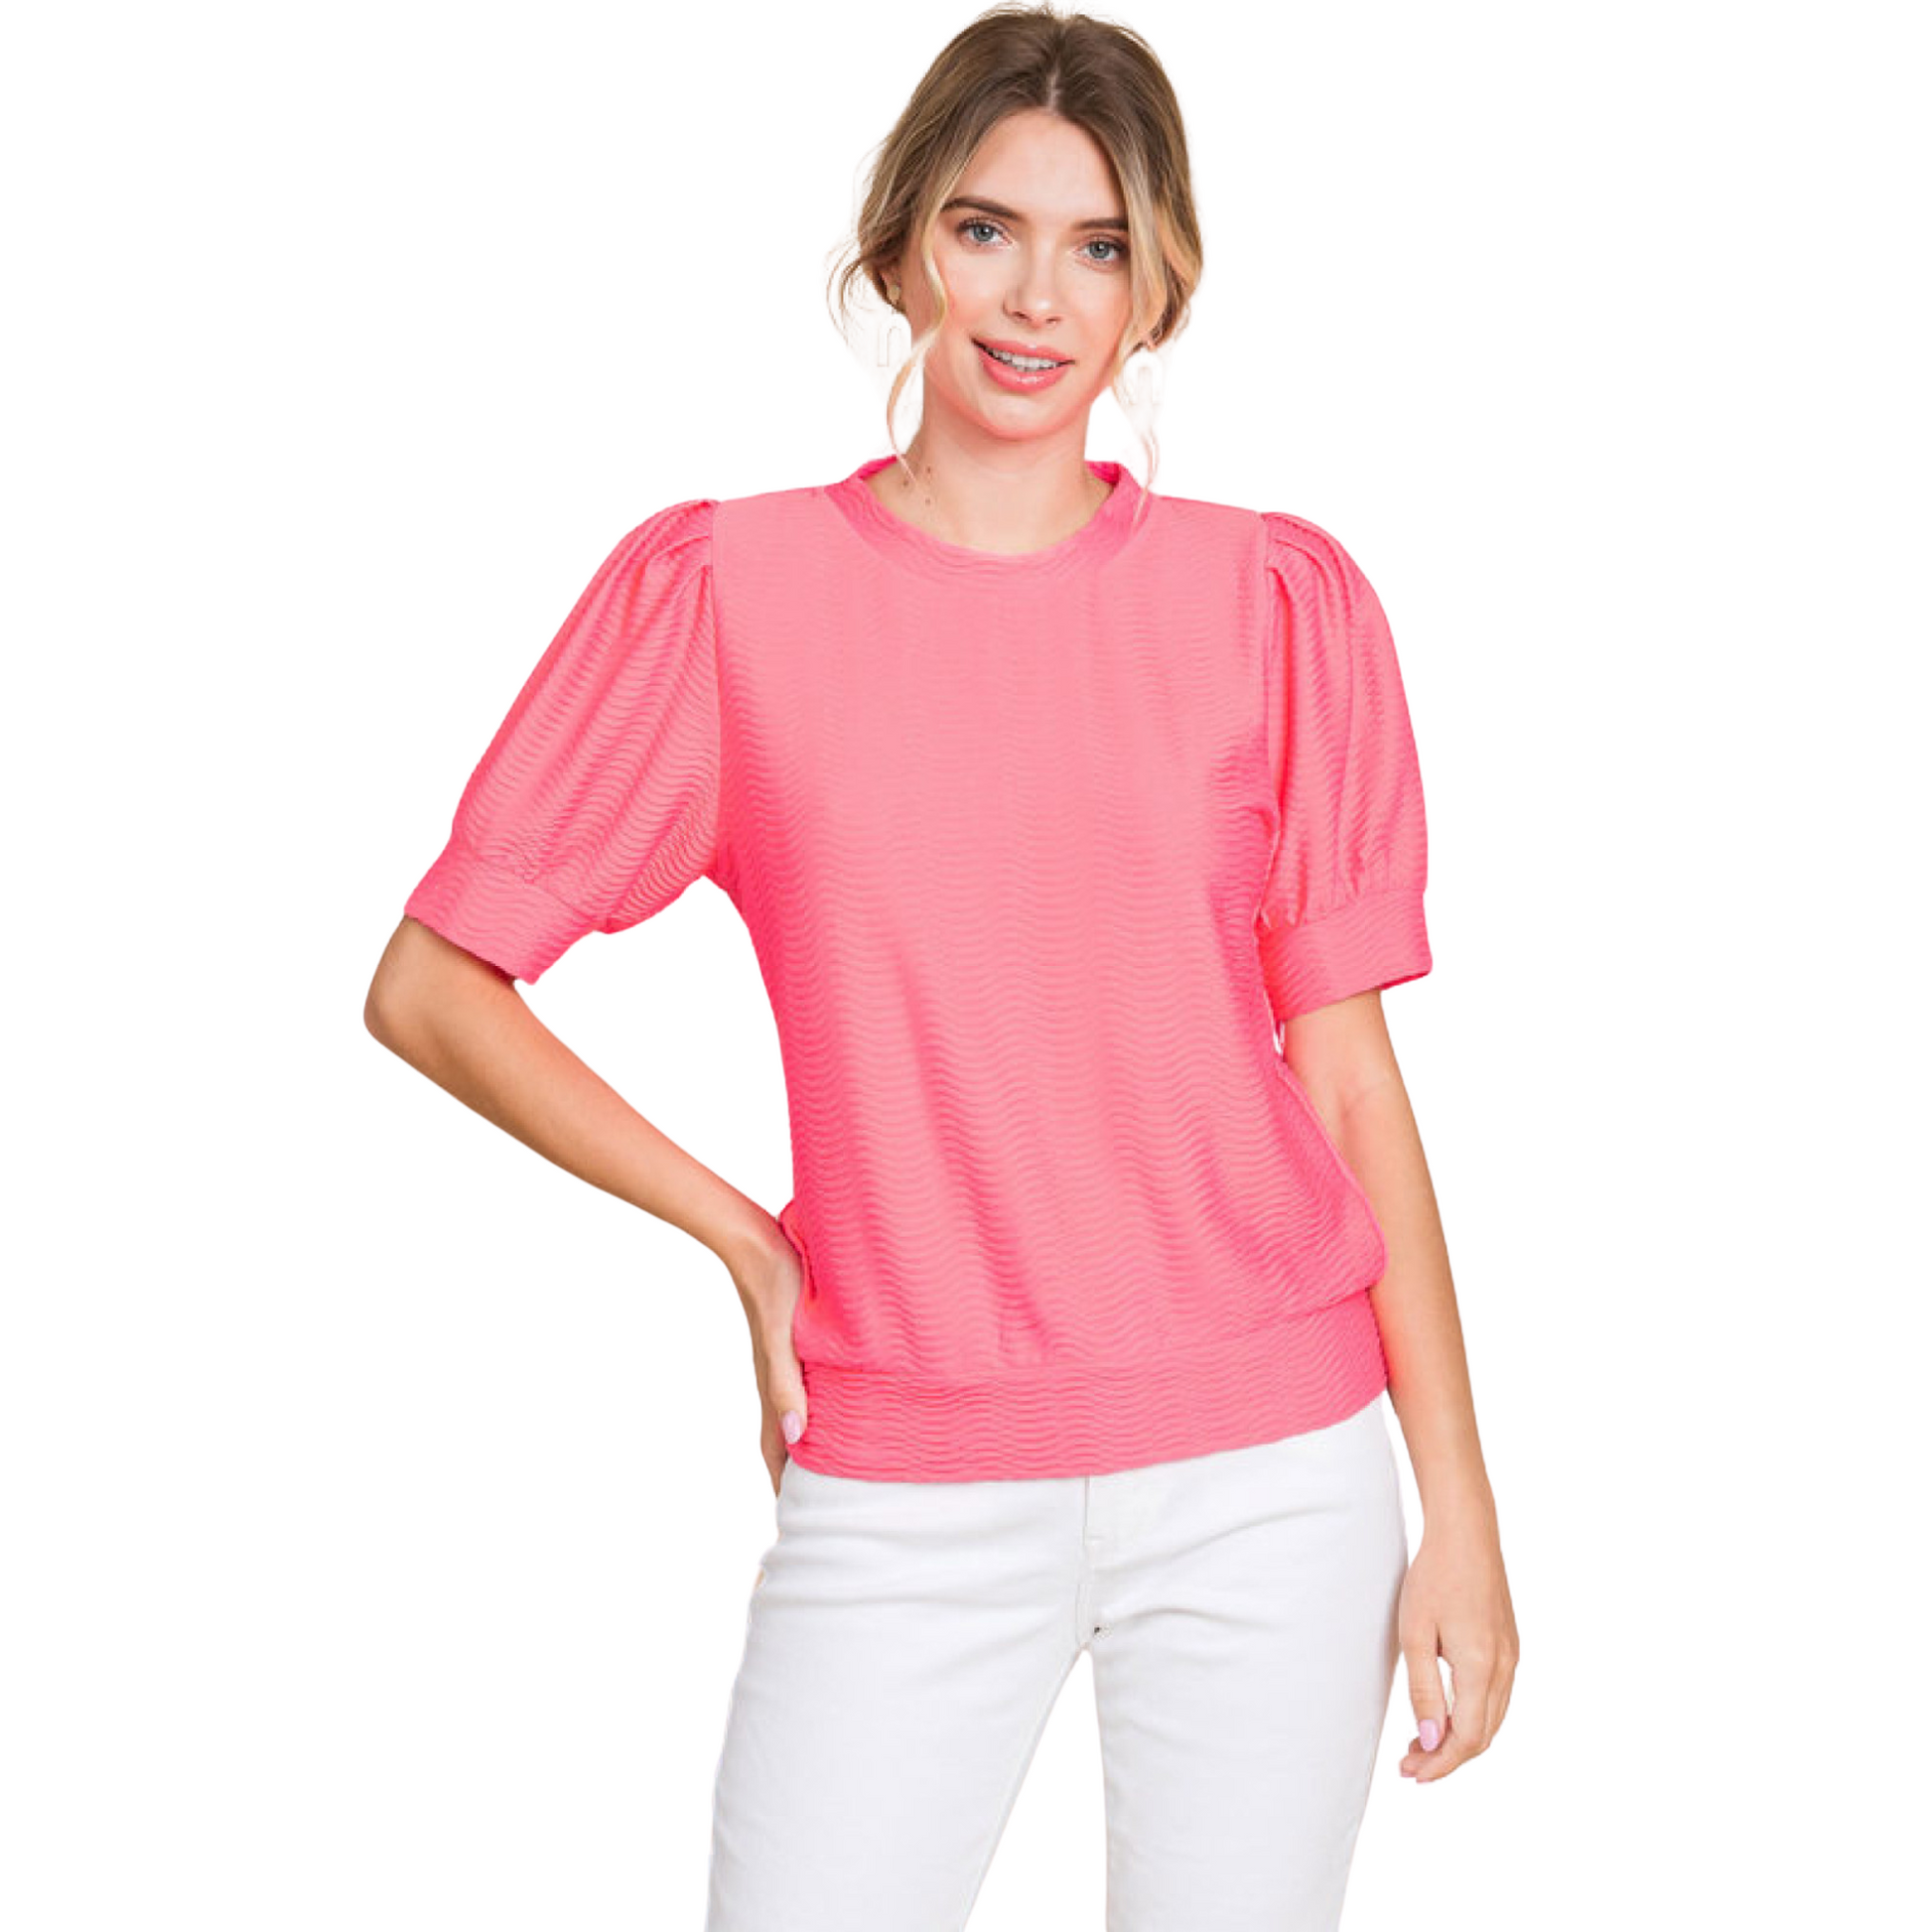 Textured short sleeve top in neon pink